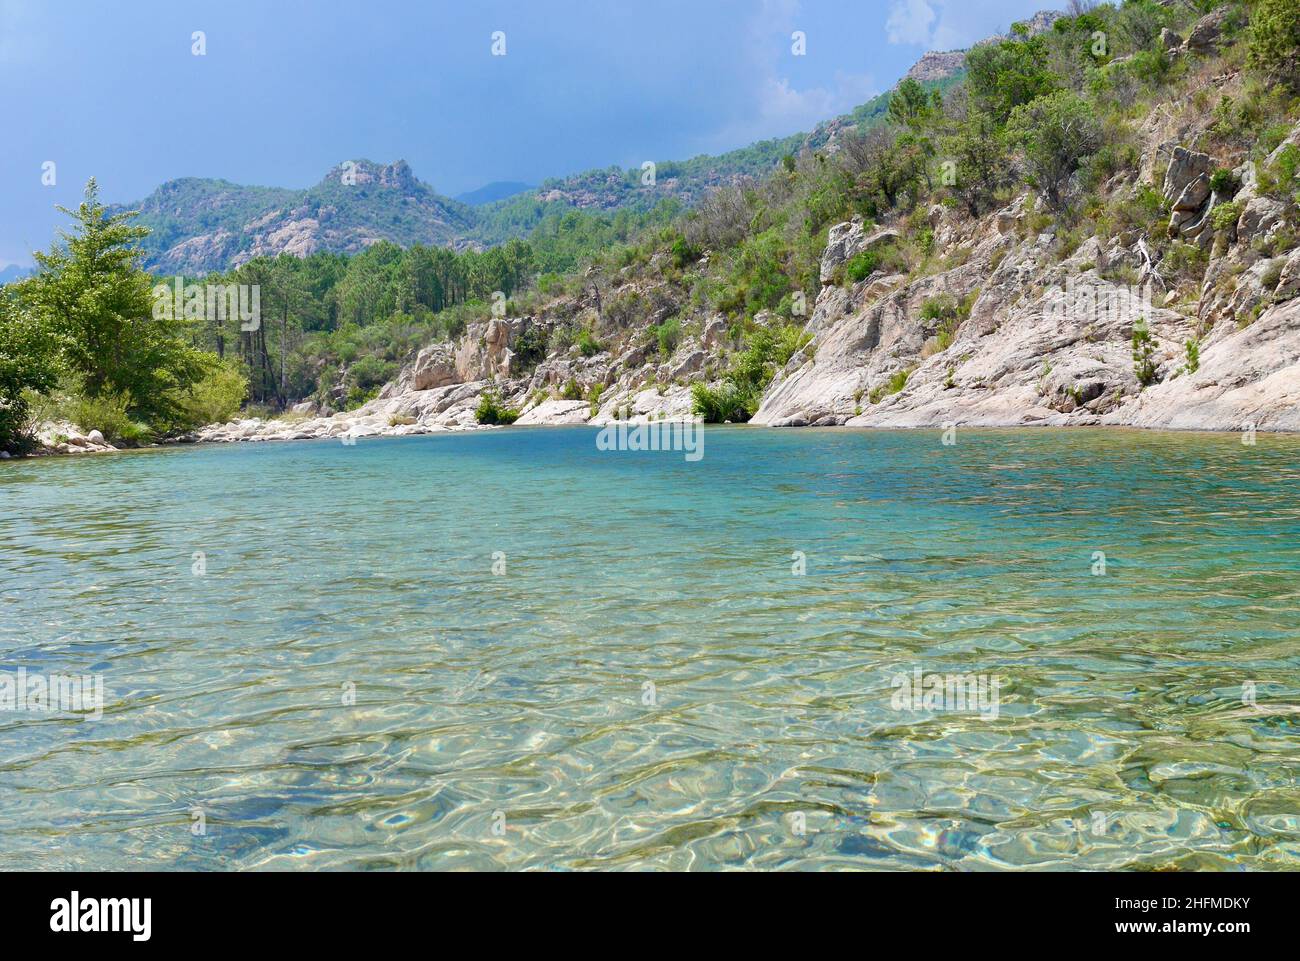 Fluss Solenzara mit türkisfarbenem Wasser am Fuße der Bavella-Gipfel im Süden Korsikas, Frankreich. Hochwertige Fotos Stockfoto